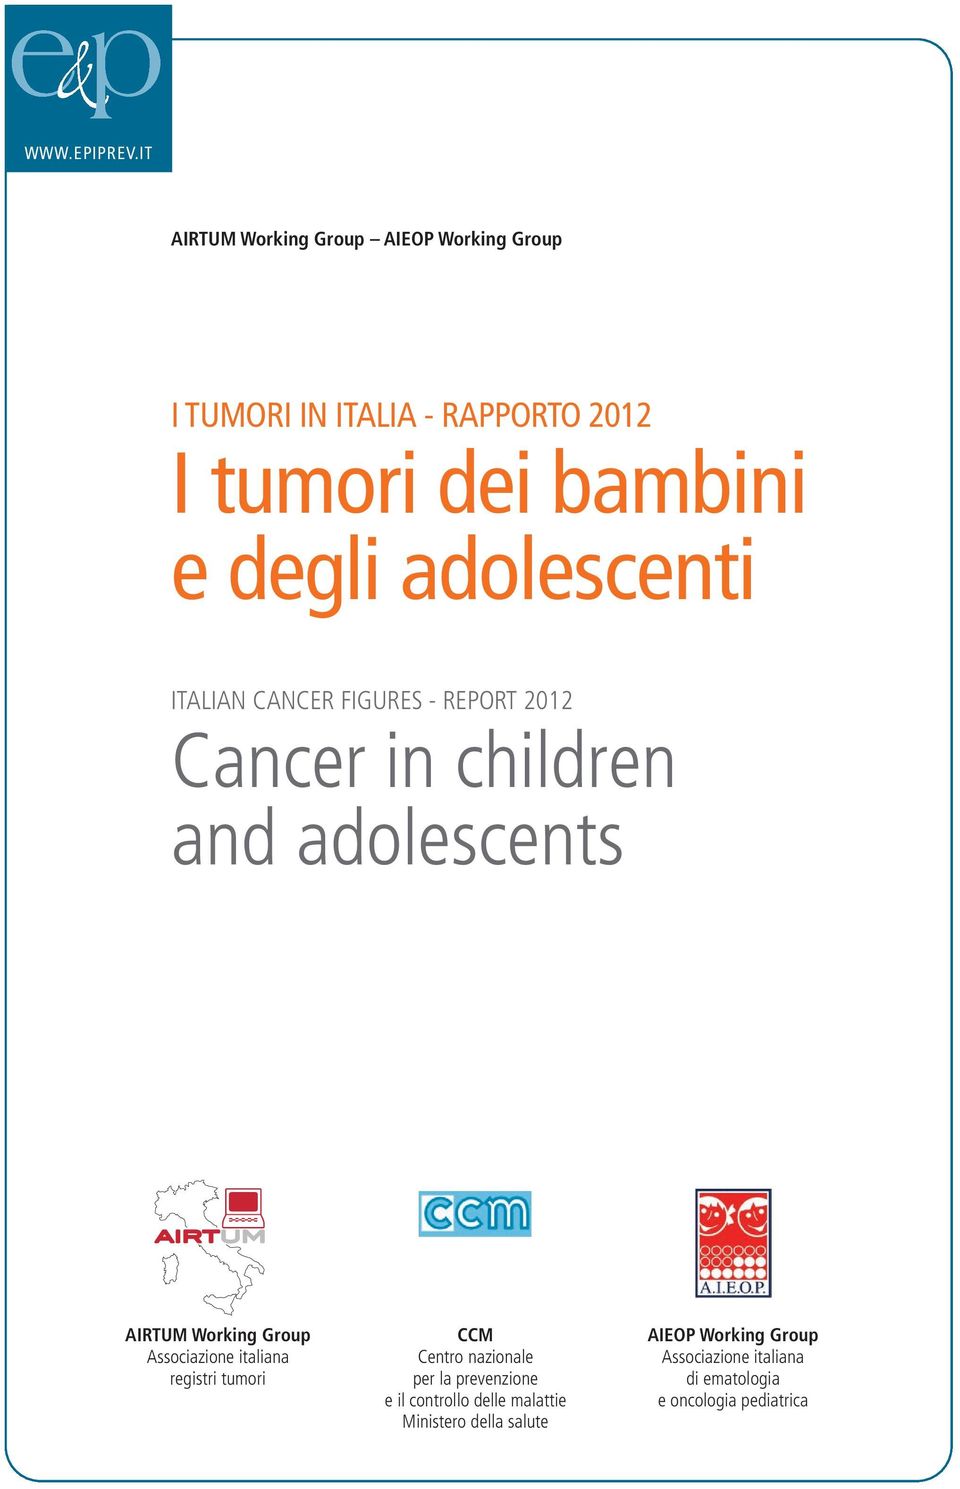 edegliadolescenti ITALIAN CANCER FIGURES - REPORT 212 Cancer in children and adolescents AIRTUM Working